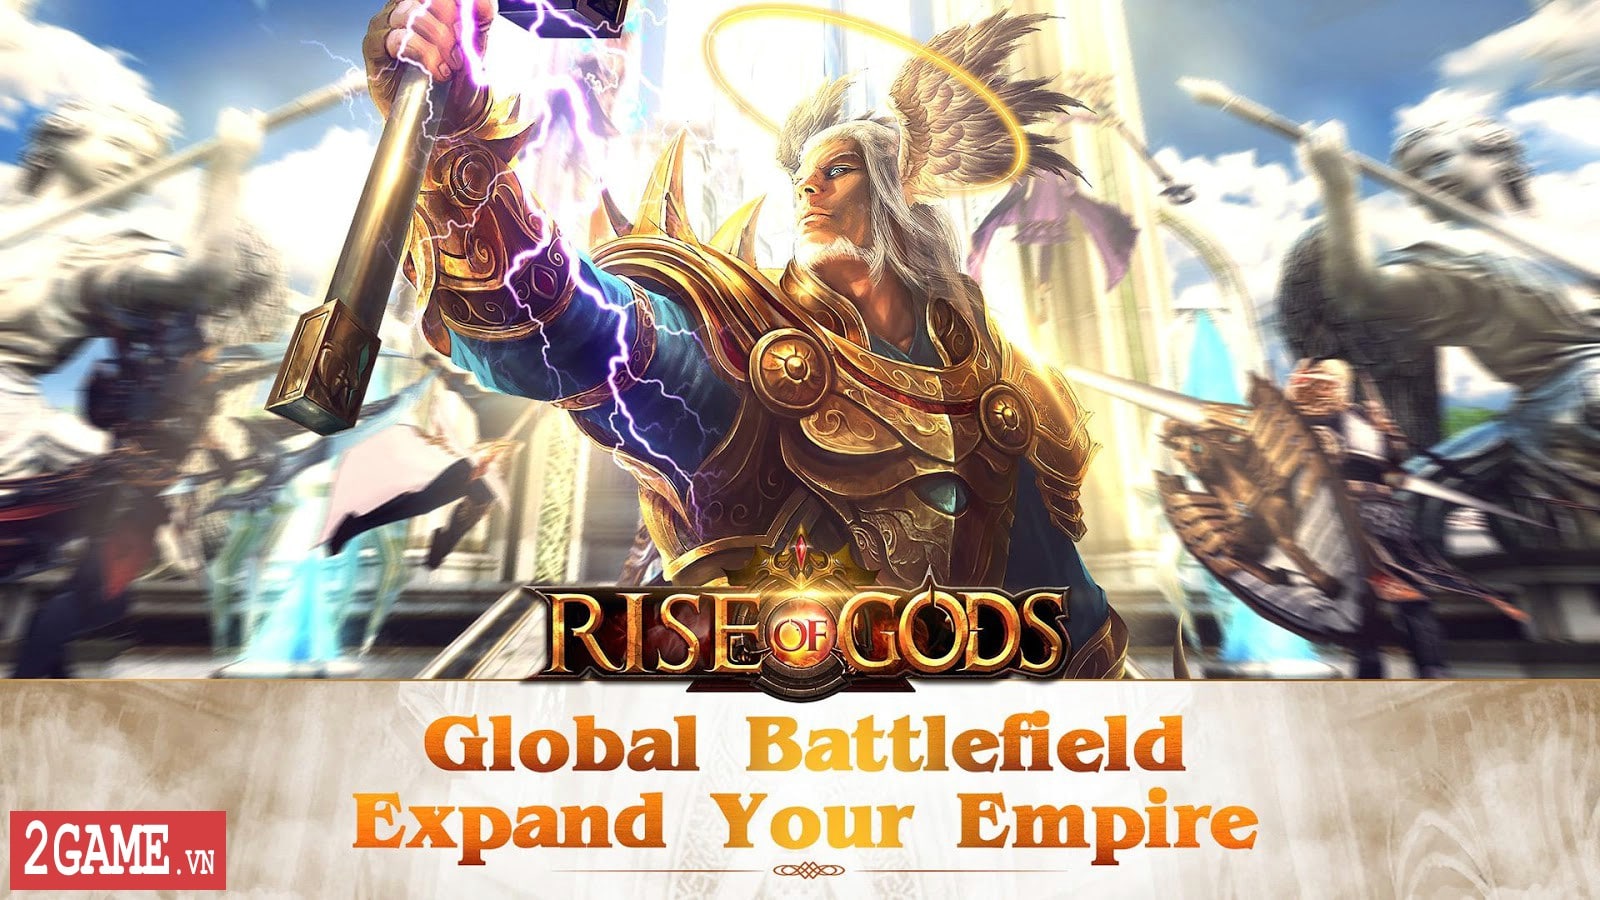 2game-Rise-of-Gods-mobile-6.jpg (1600×900)